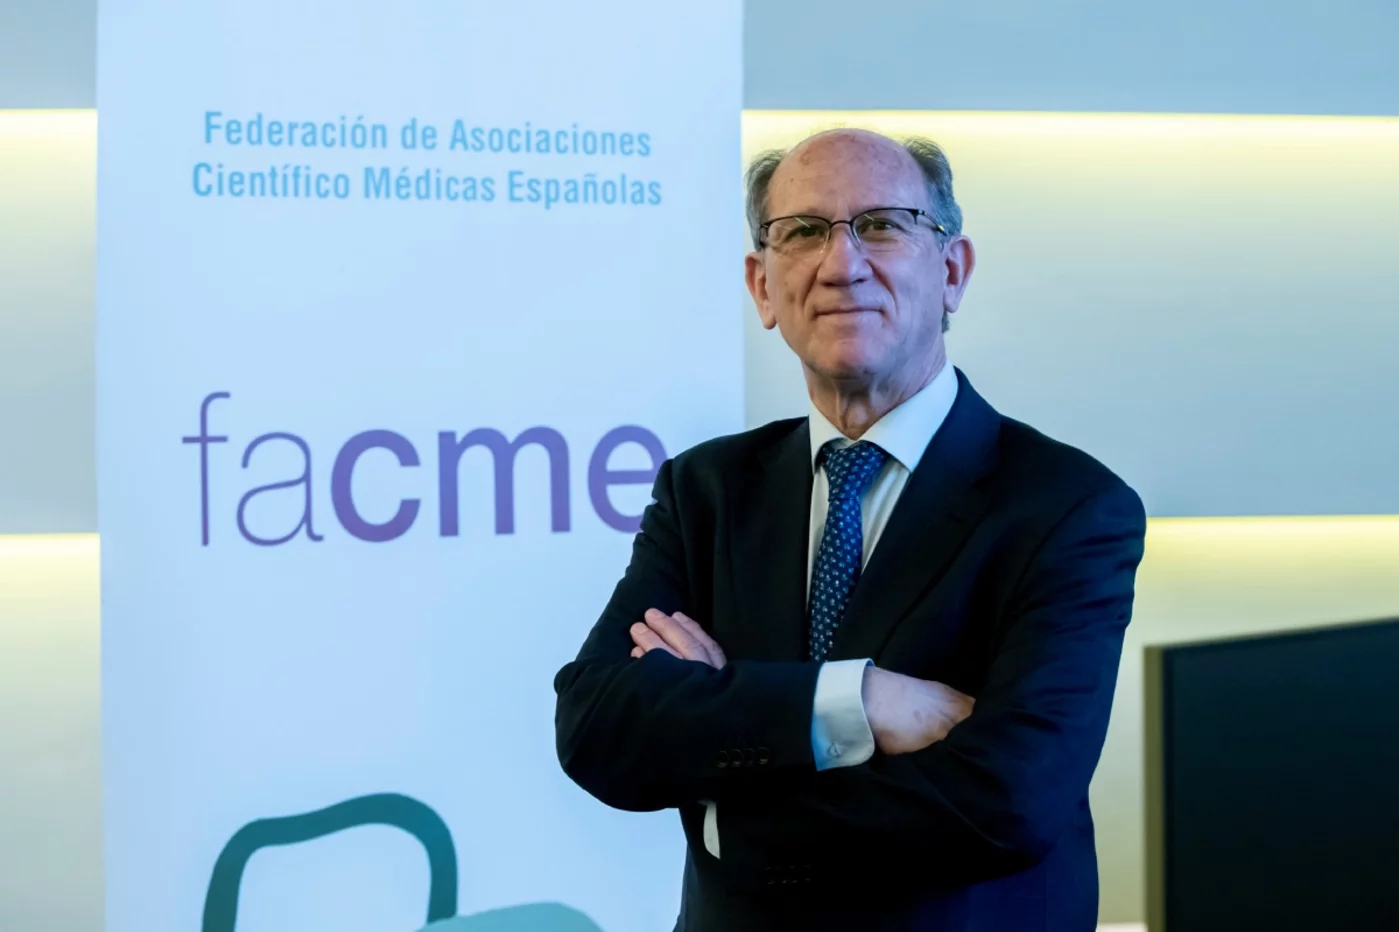 Javier García Alegría preside la Federación de Asociaciones Científico Médicas Españolas (Facme). Foto: JOSÉ LUIS PINDADO.